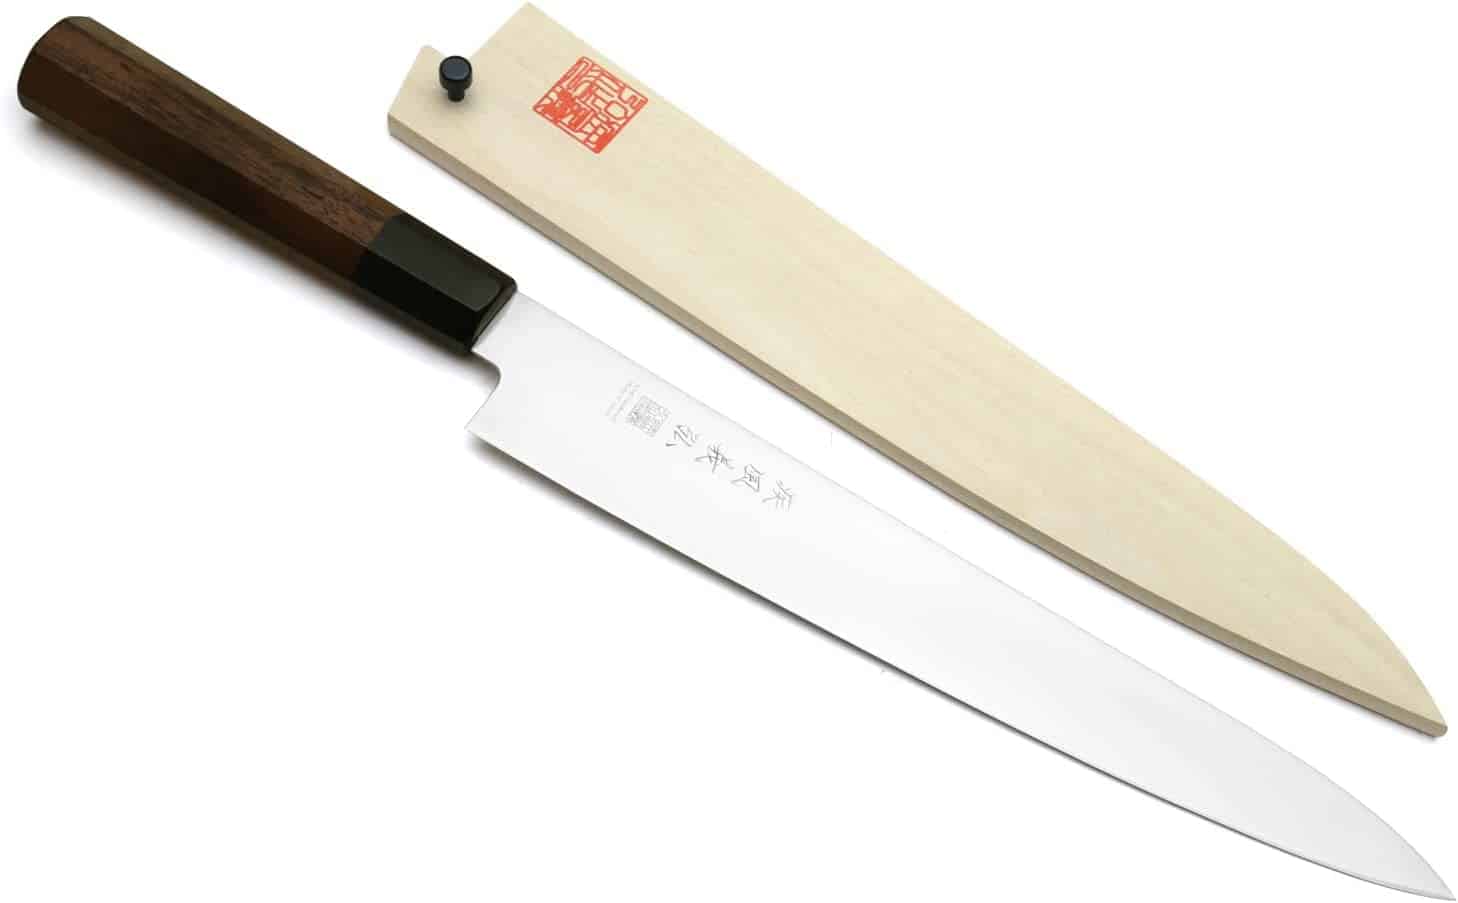 Bästa Sujihiki-kniven totalt sett - Yoshihiro Ice Härdad 9.5 AUS-8 rostfritt stål